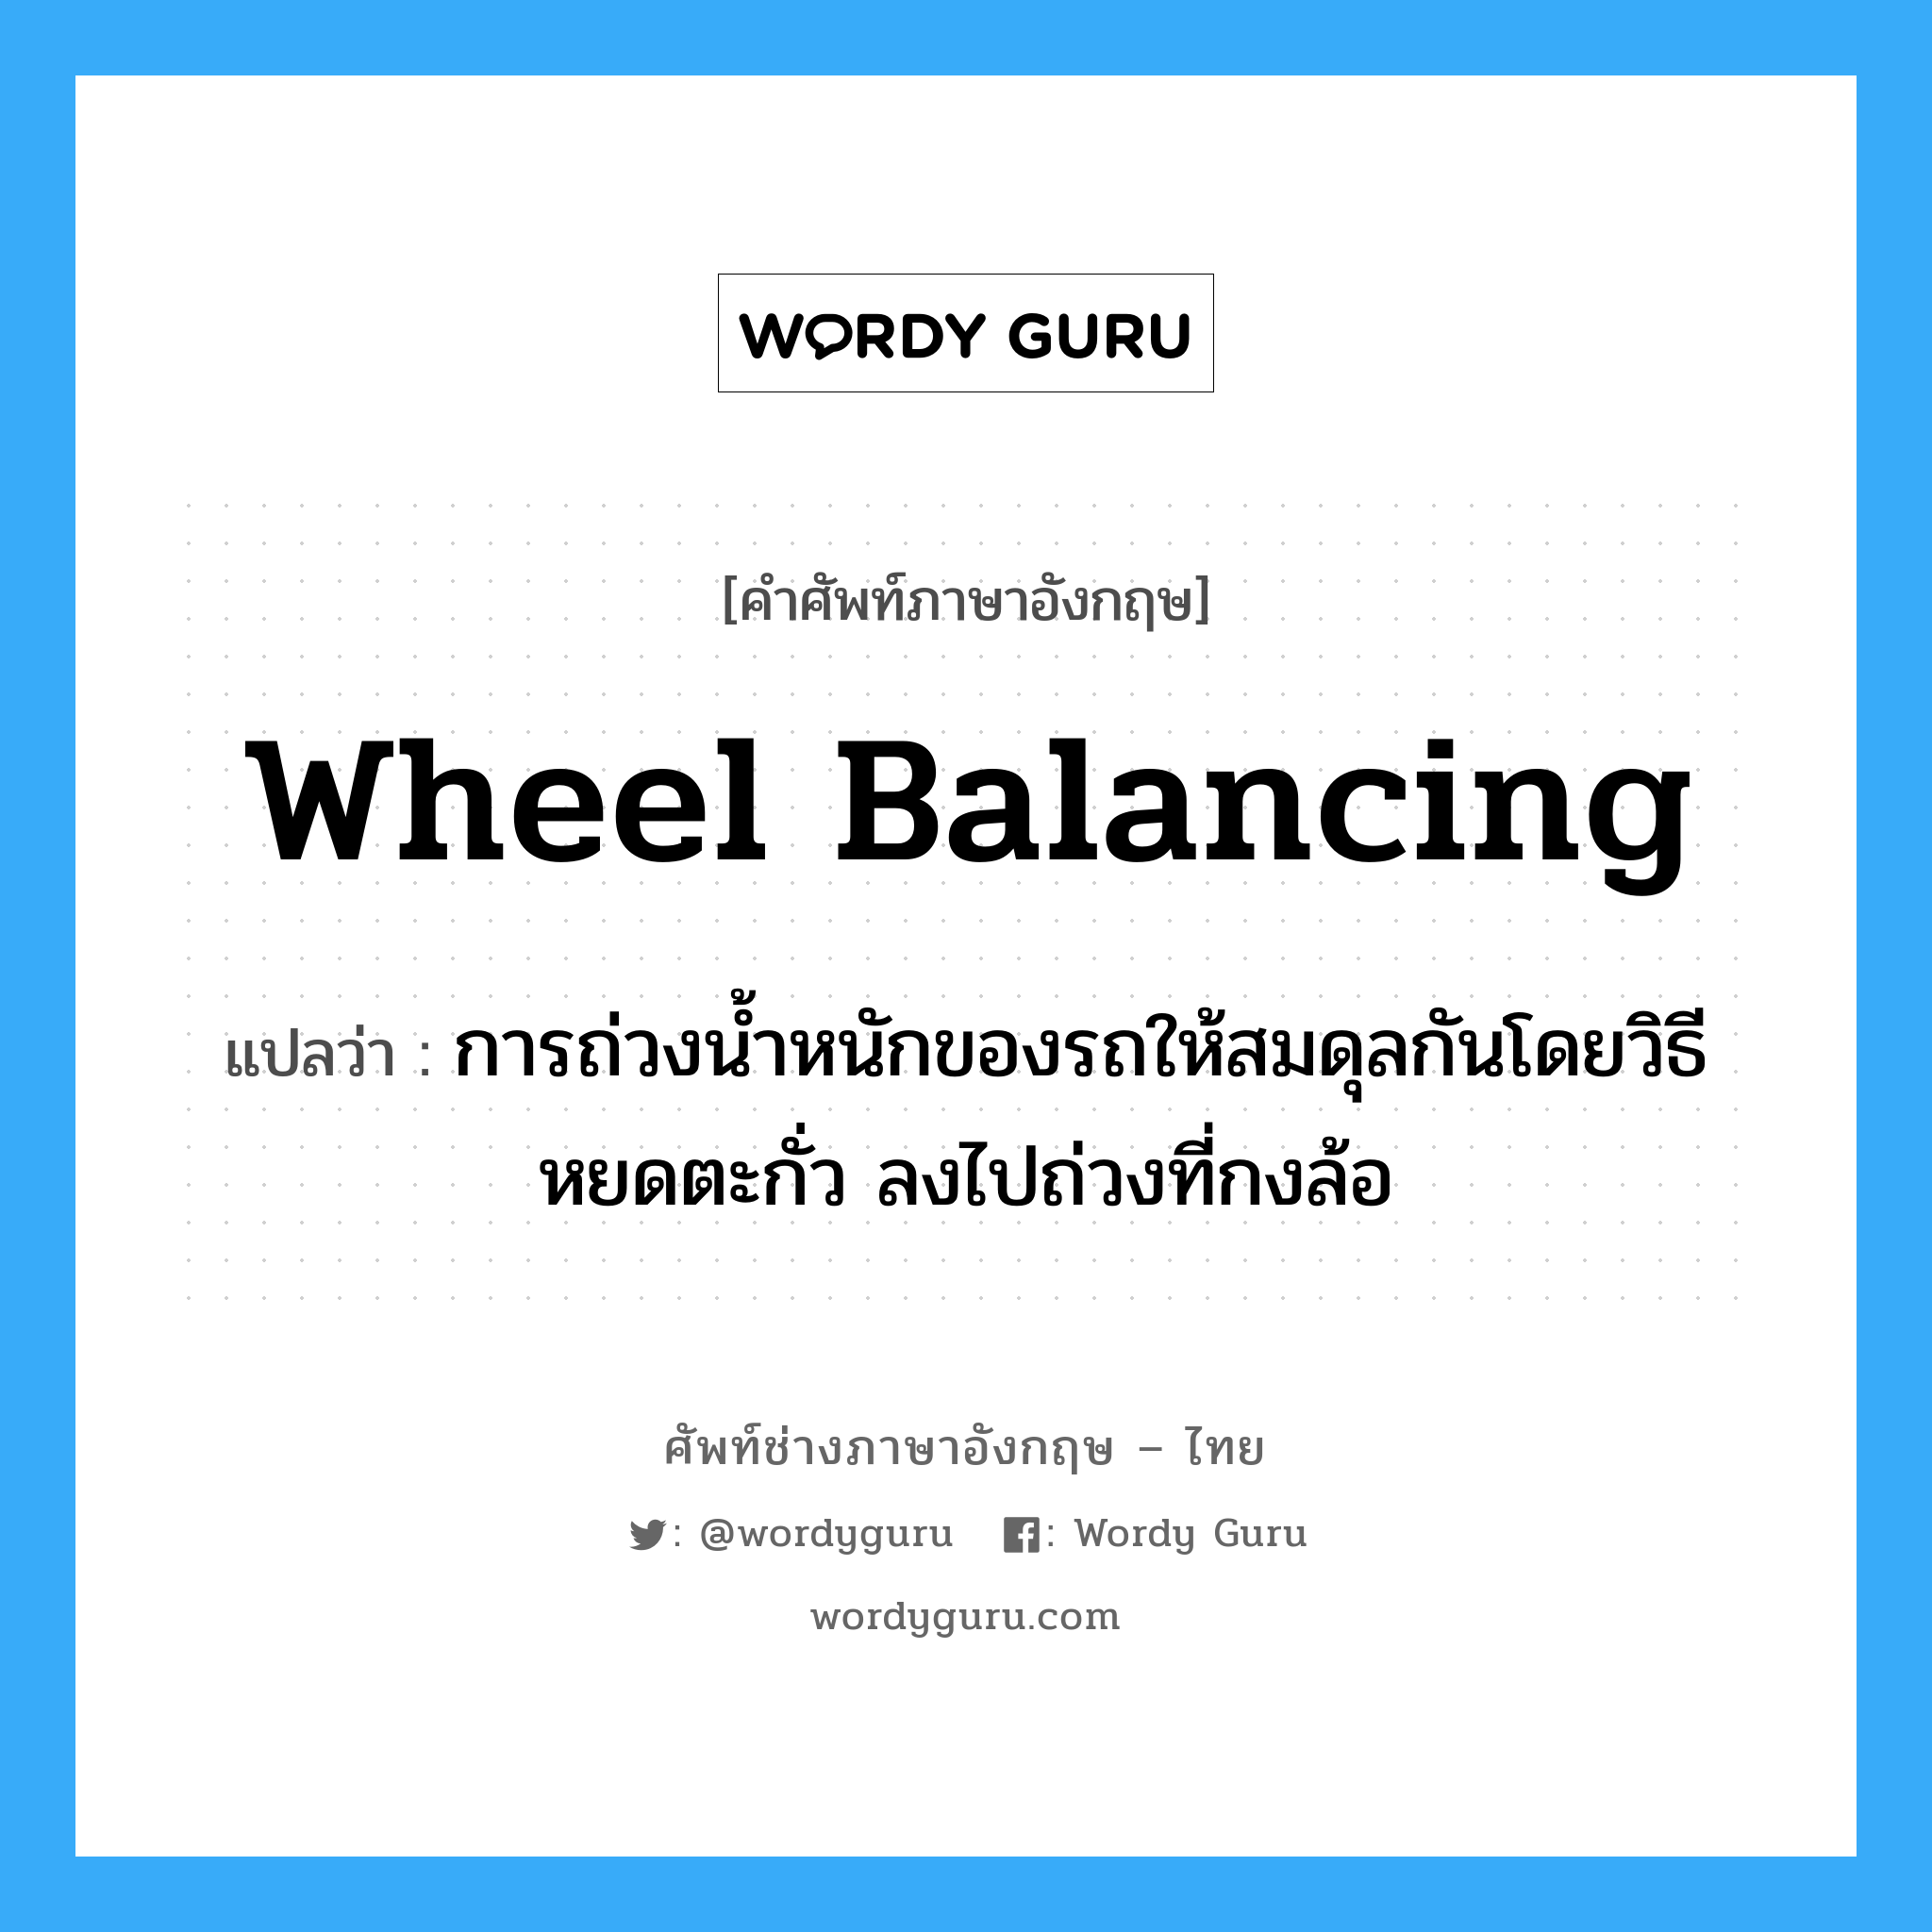 wheel balancing แปลว่า?, คำศัพท์ช่างภาษาอังกฤษ - ไทย wheel balancing คำศัพท์ภาษาอังกฤษ wheel balancing แปลว่า การถ่วงน้ำหนักของรถให้สมดุลกันโดยวิธีหยดตะกั่ว ลงไปถ่วงที่กงล้อ